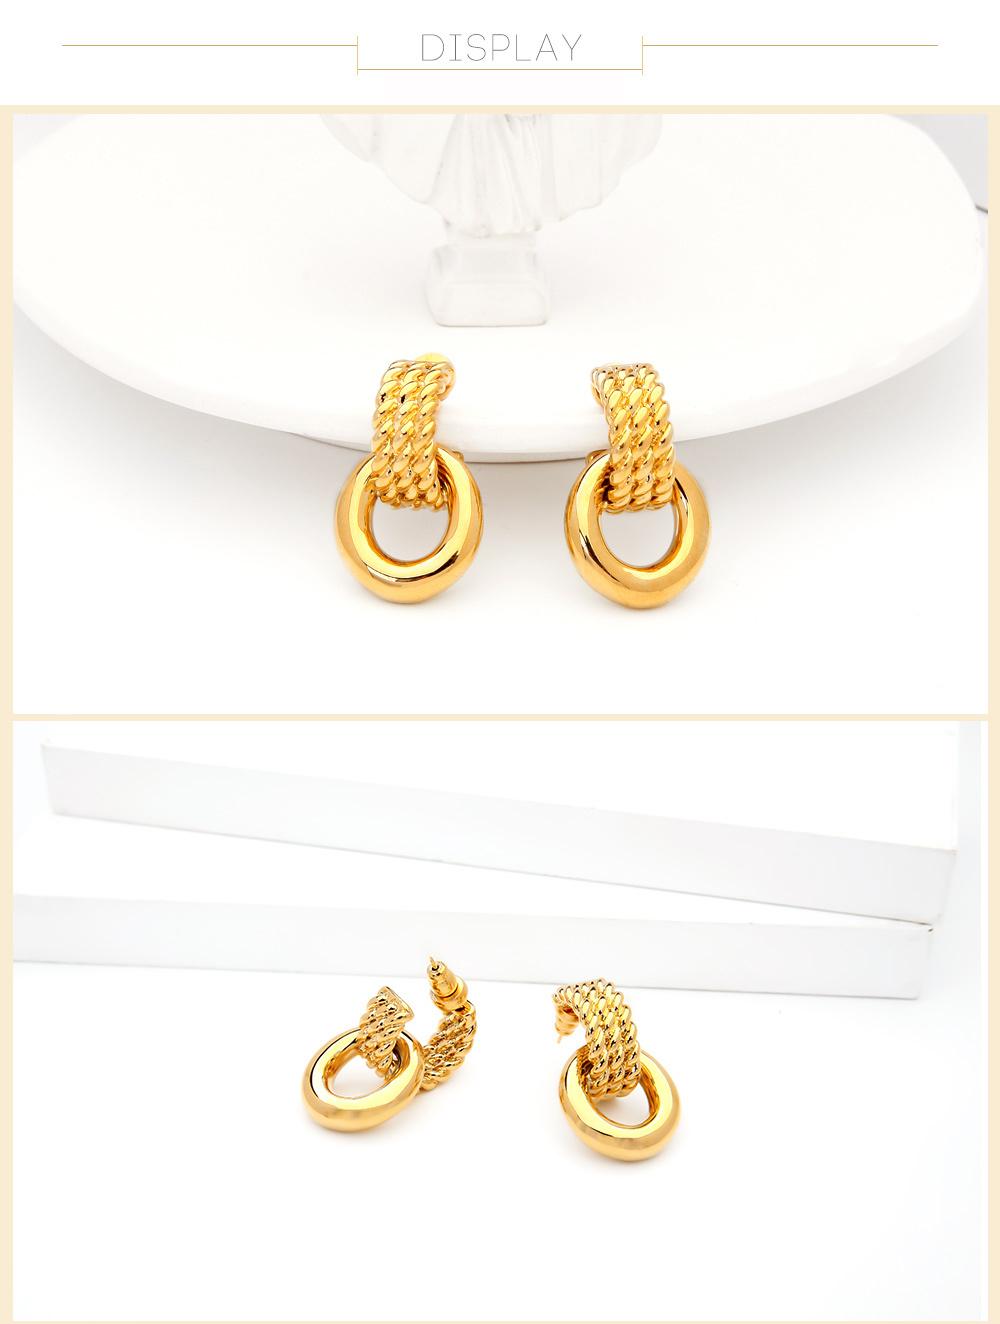 Wholesale Fashion 100% Copper Ear Stud Ring Style Earrings